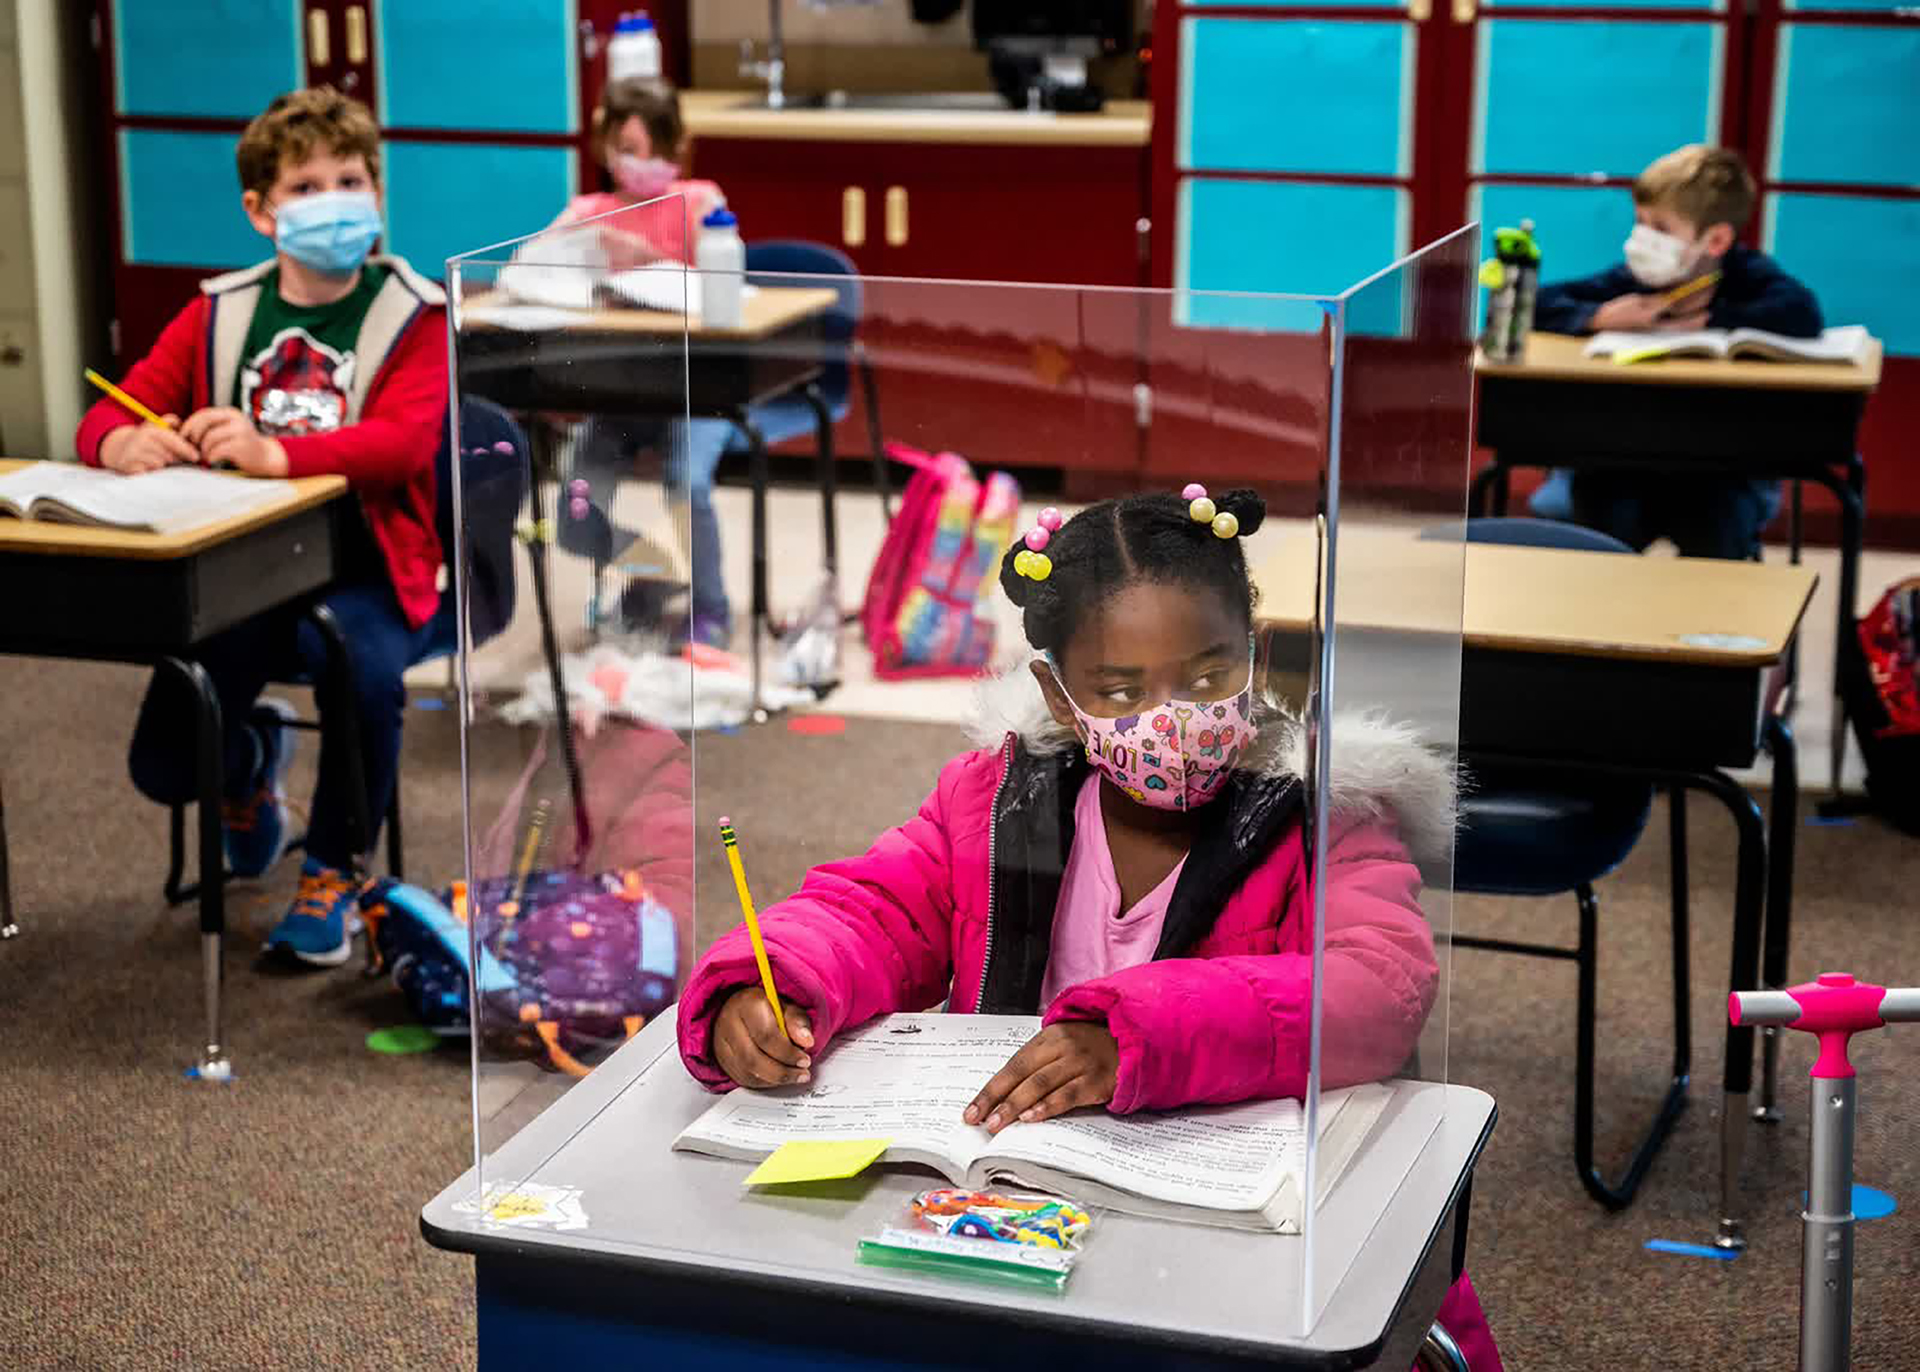 Bàn học của em Sophia Frazier (học sinh lớp 1, Trường tiểu học Two Rivers tại bang California, Mỹ) được che chắn bằng vách ngăn nhựa. Những bàn học gần với bàn giáo viên nhất đều có vách ngăn như vậy.